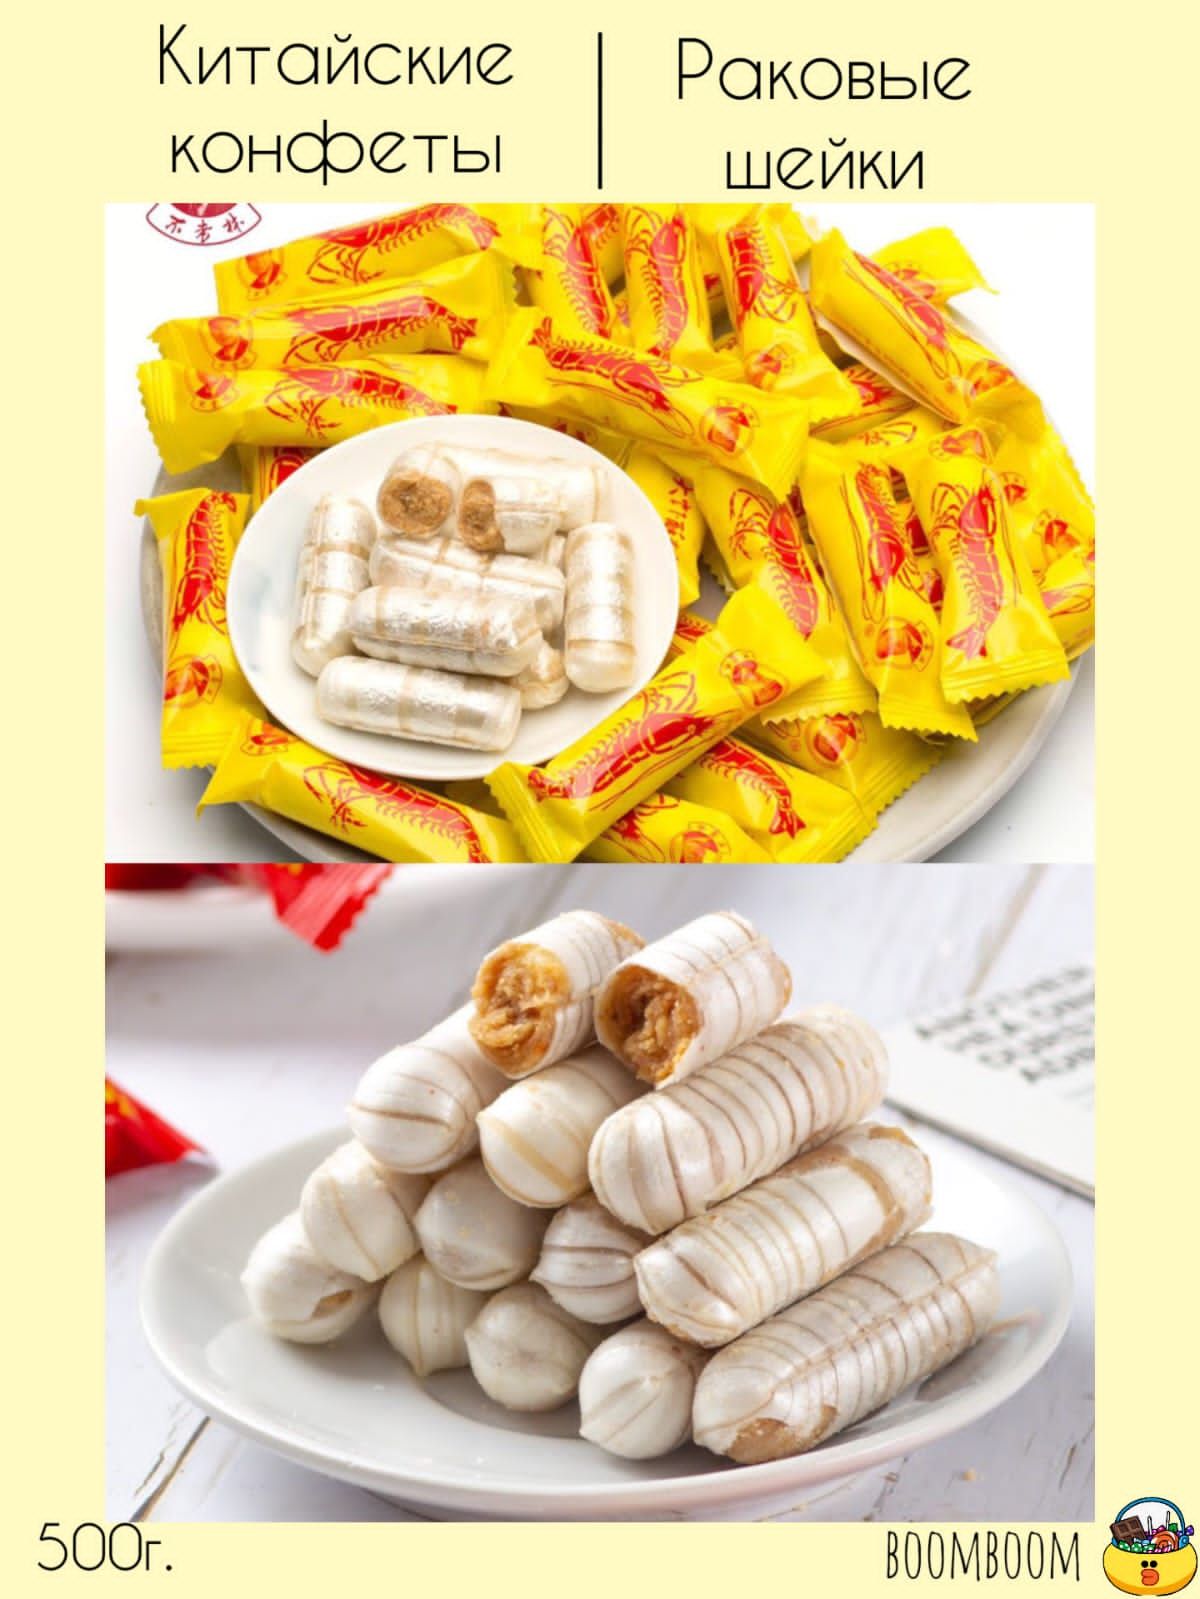 Китайские конфеты раковые шейки